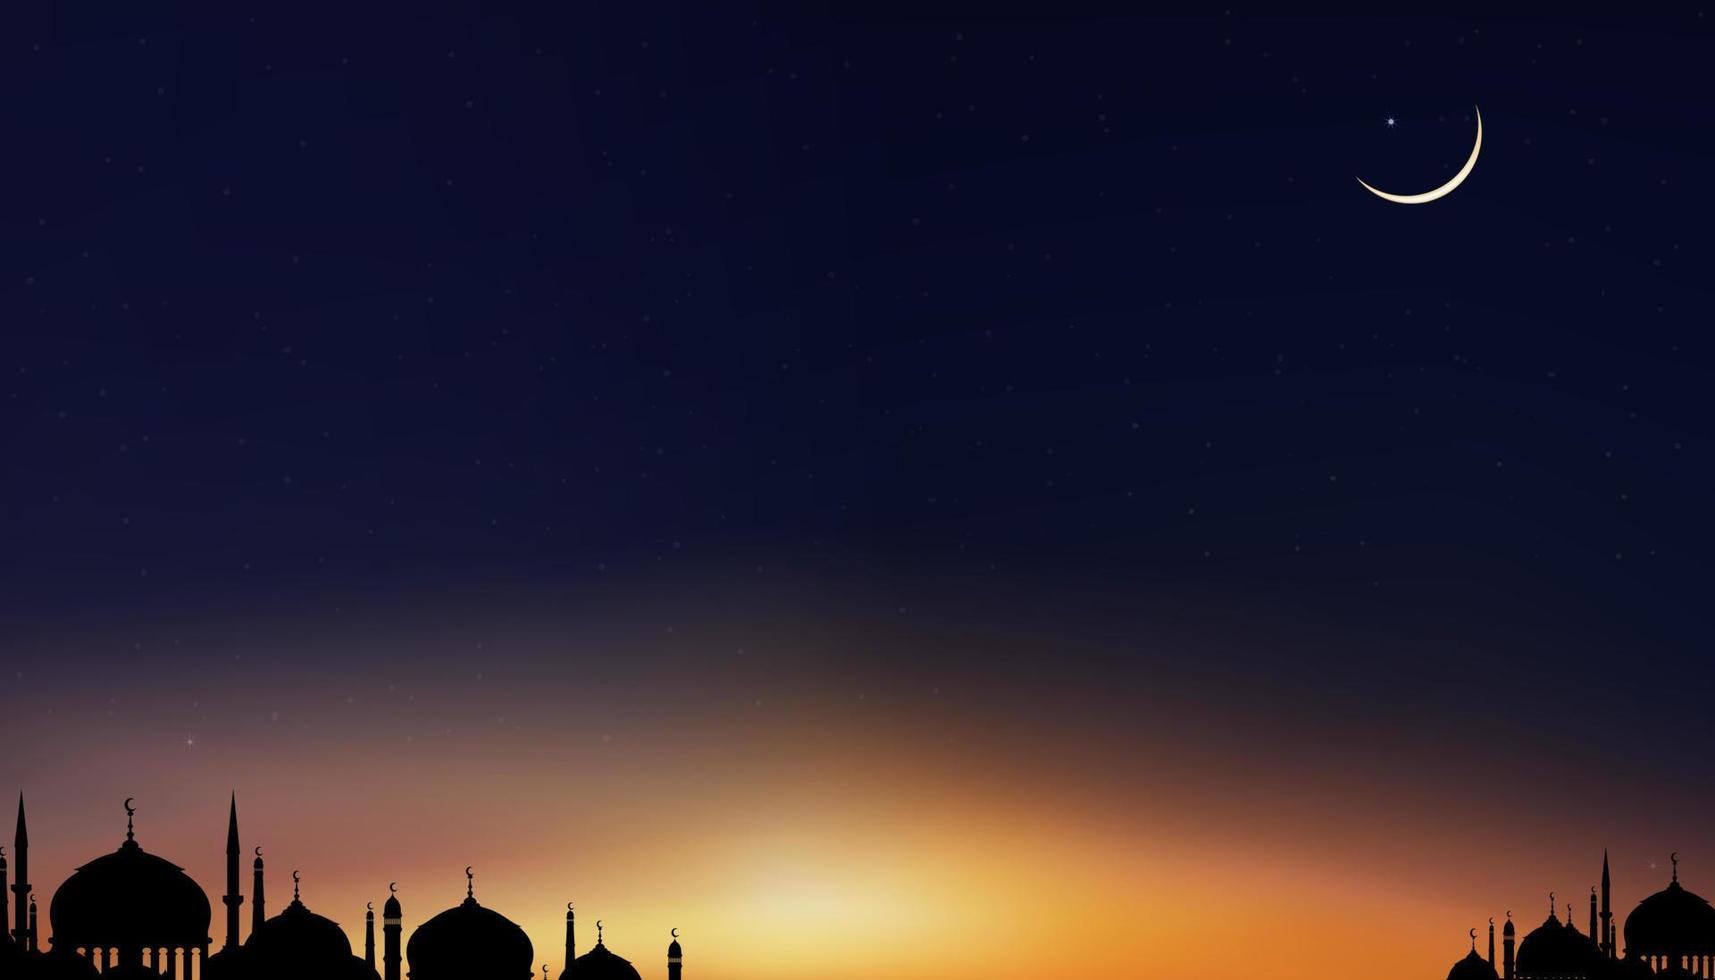 fundo islâmico, design ramadan kareem com mesquitas de cúpula de silhueta, lua crescente no céu do pôr do sol, vetor noite de ramadhan com céu crepuscular ao entardecer para religião islâmica, eid al-adha, eid mubarak, eid al fitr